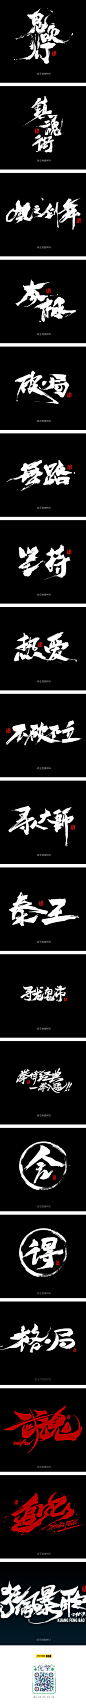 字娱字乐IV字体传奇网中国首个字体品牌设计师交流网